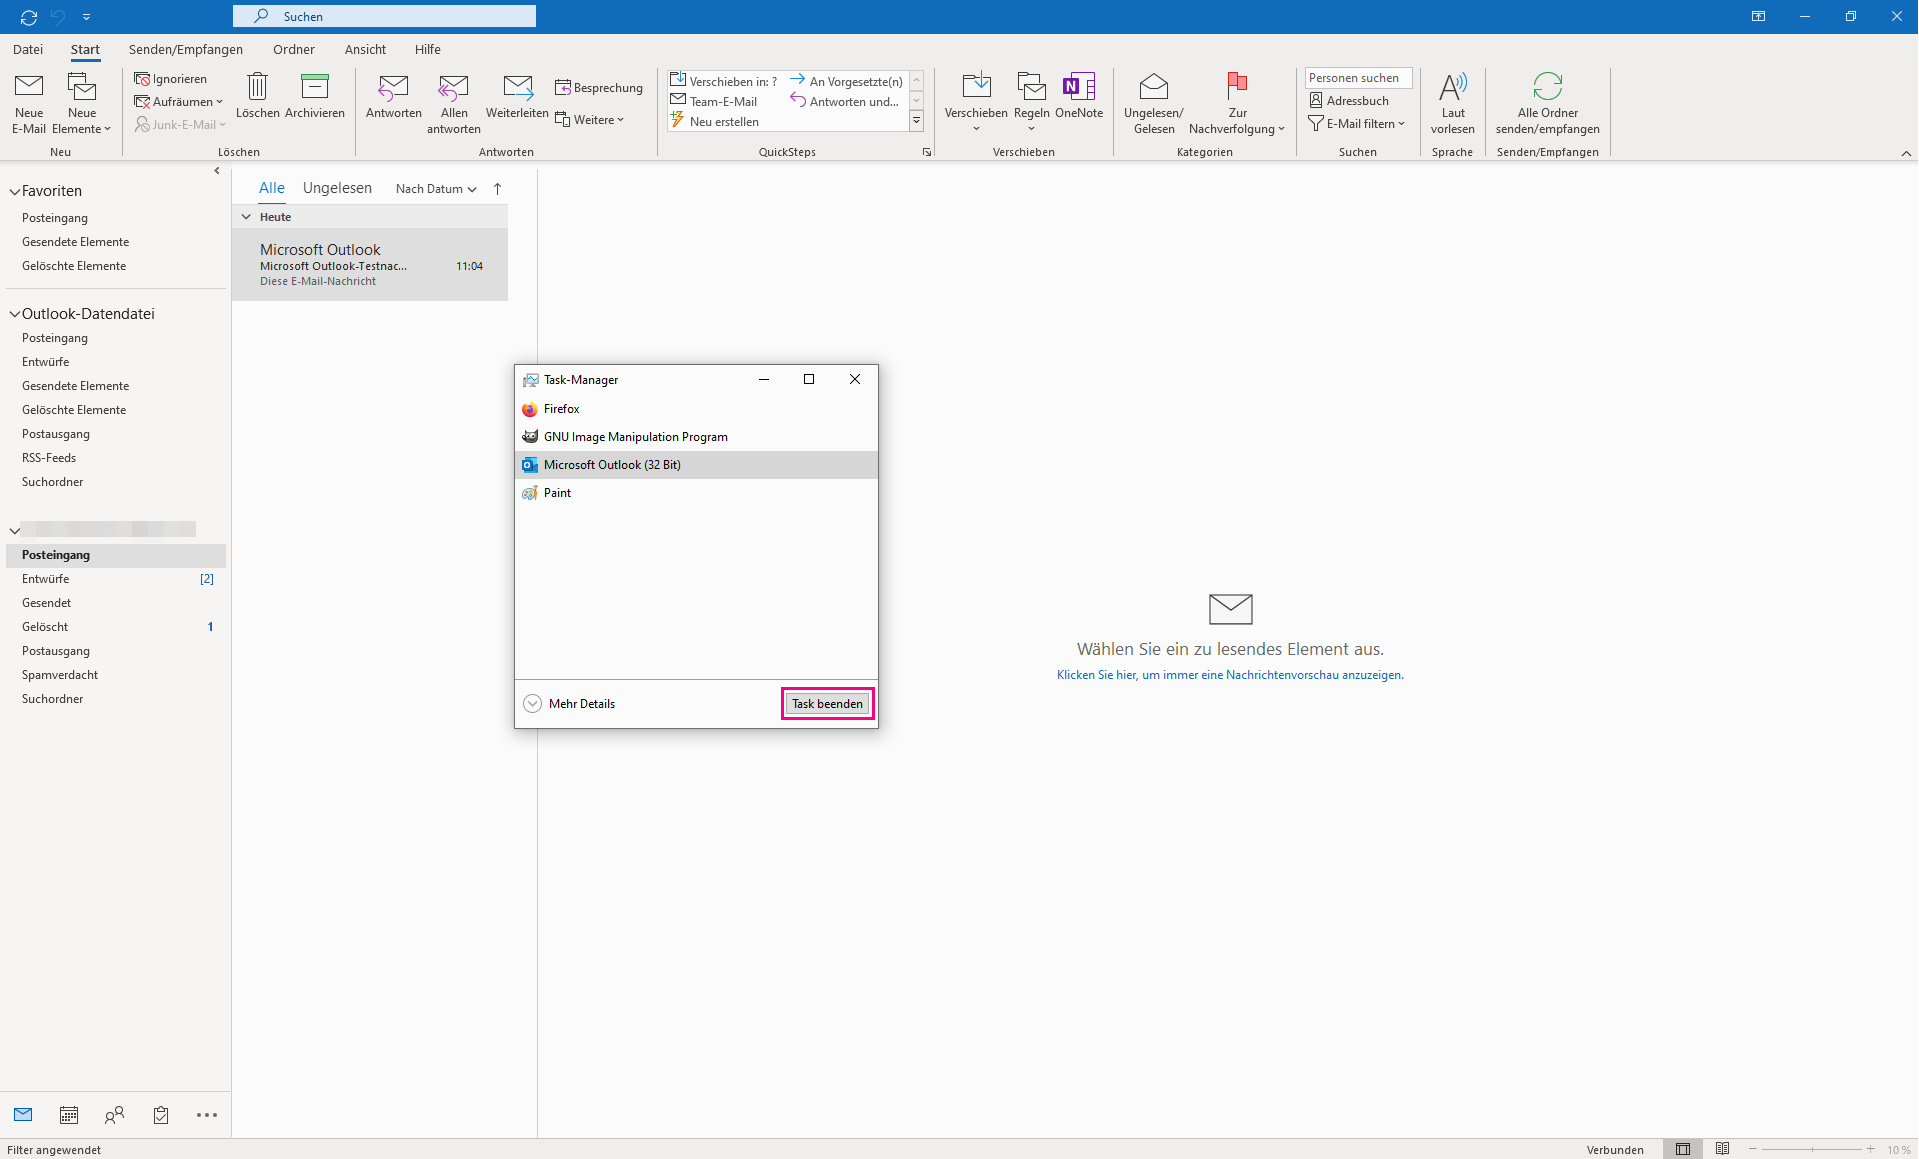 Outlook-Suche funktioniert nicht - was tun? | heise online